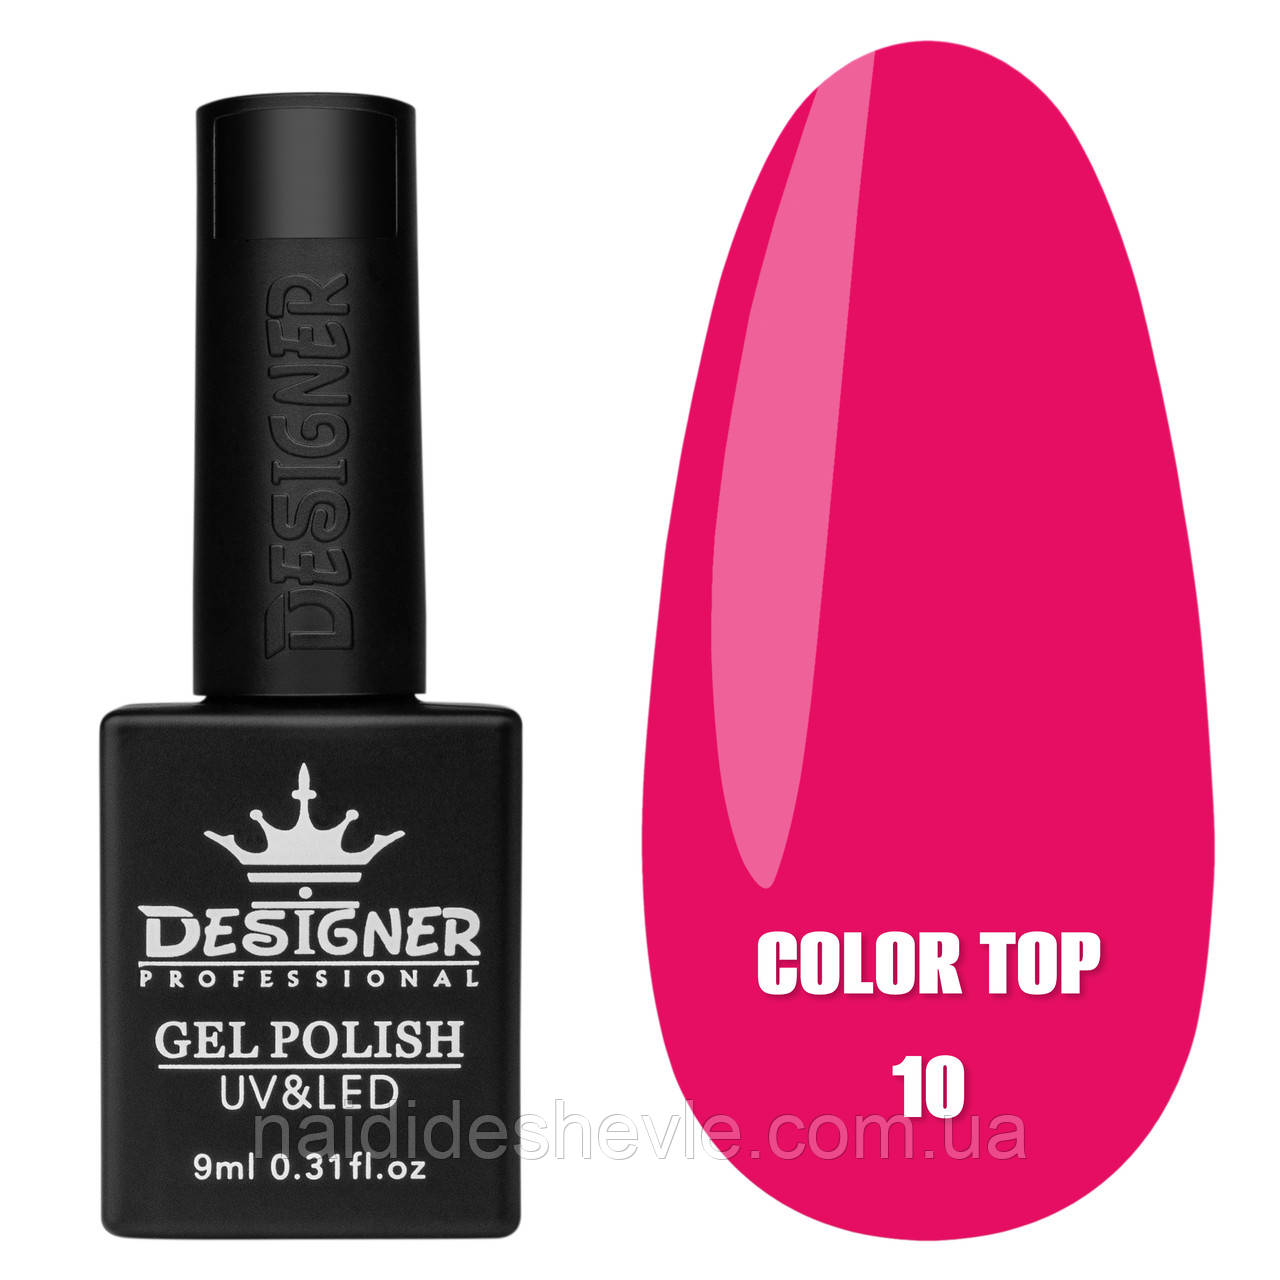 Color Top Дизайнер (9 мл.) - кольорове топове покриття для нігтів з вітражним ефектом Рожевий 10